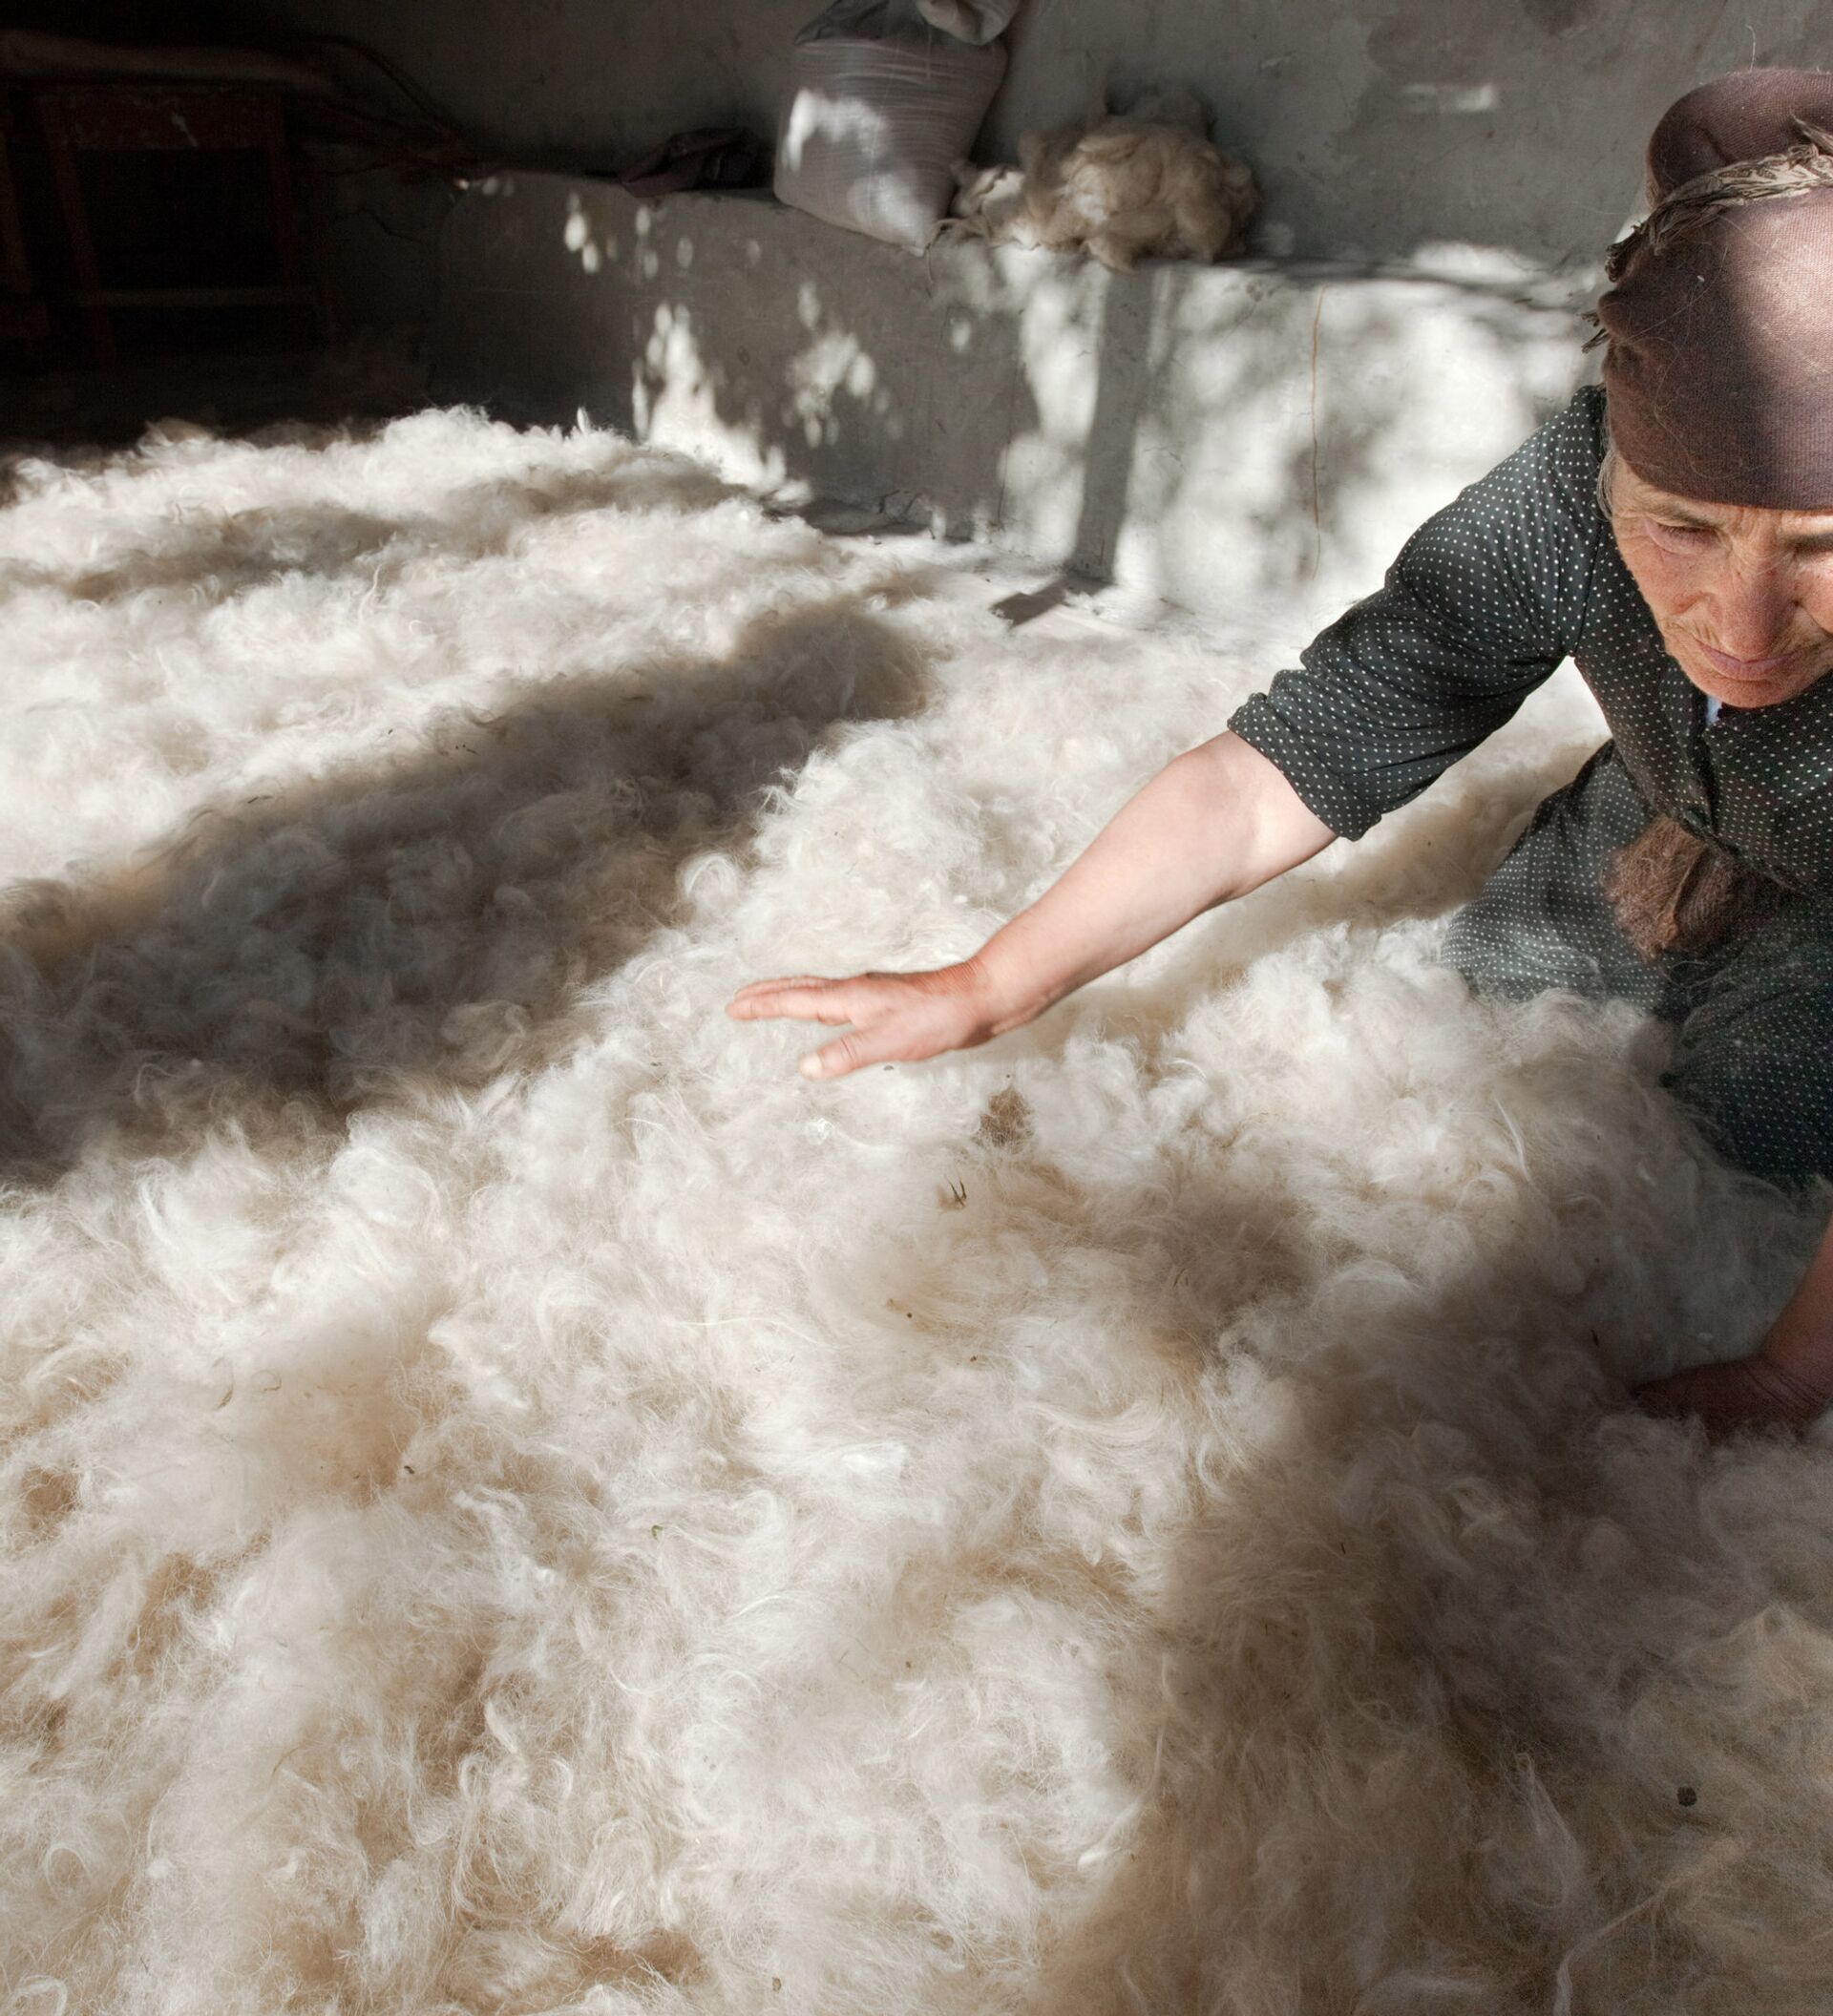 Мытье шерсти. Обработка шерсти. Обработки шерсти славян. Производство шерсти в Дагестане. Этапы переработки шерсти.